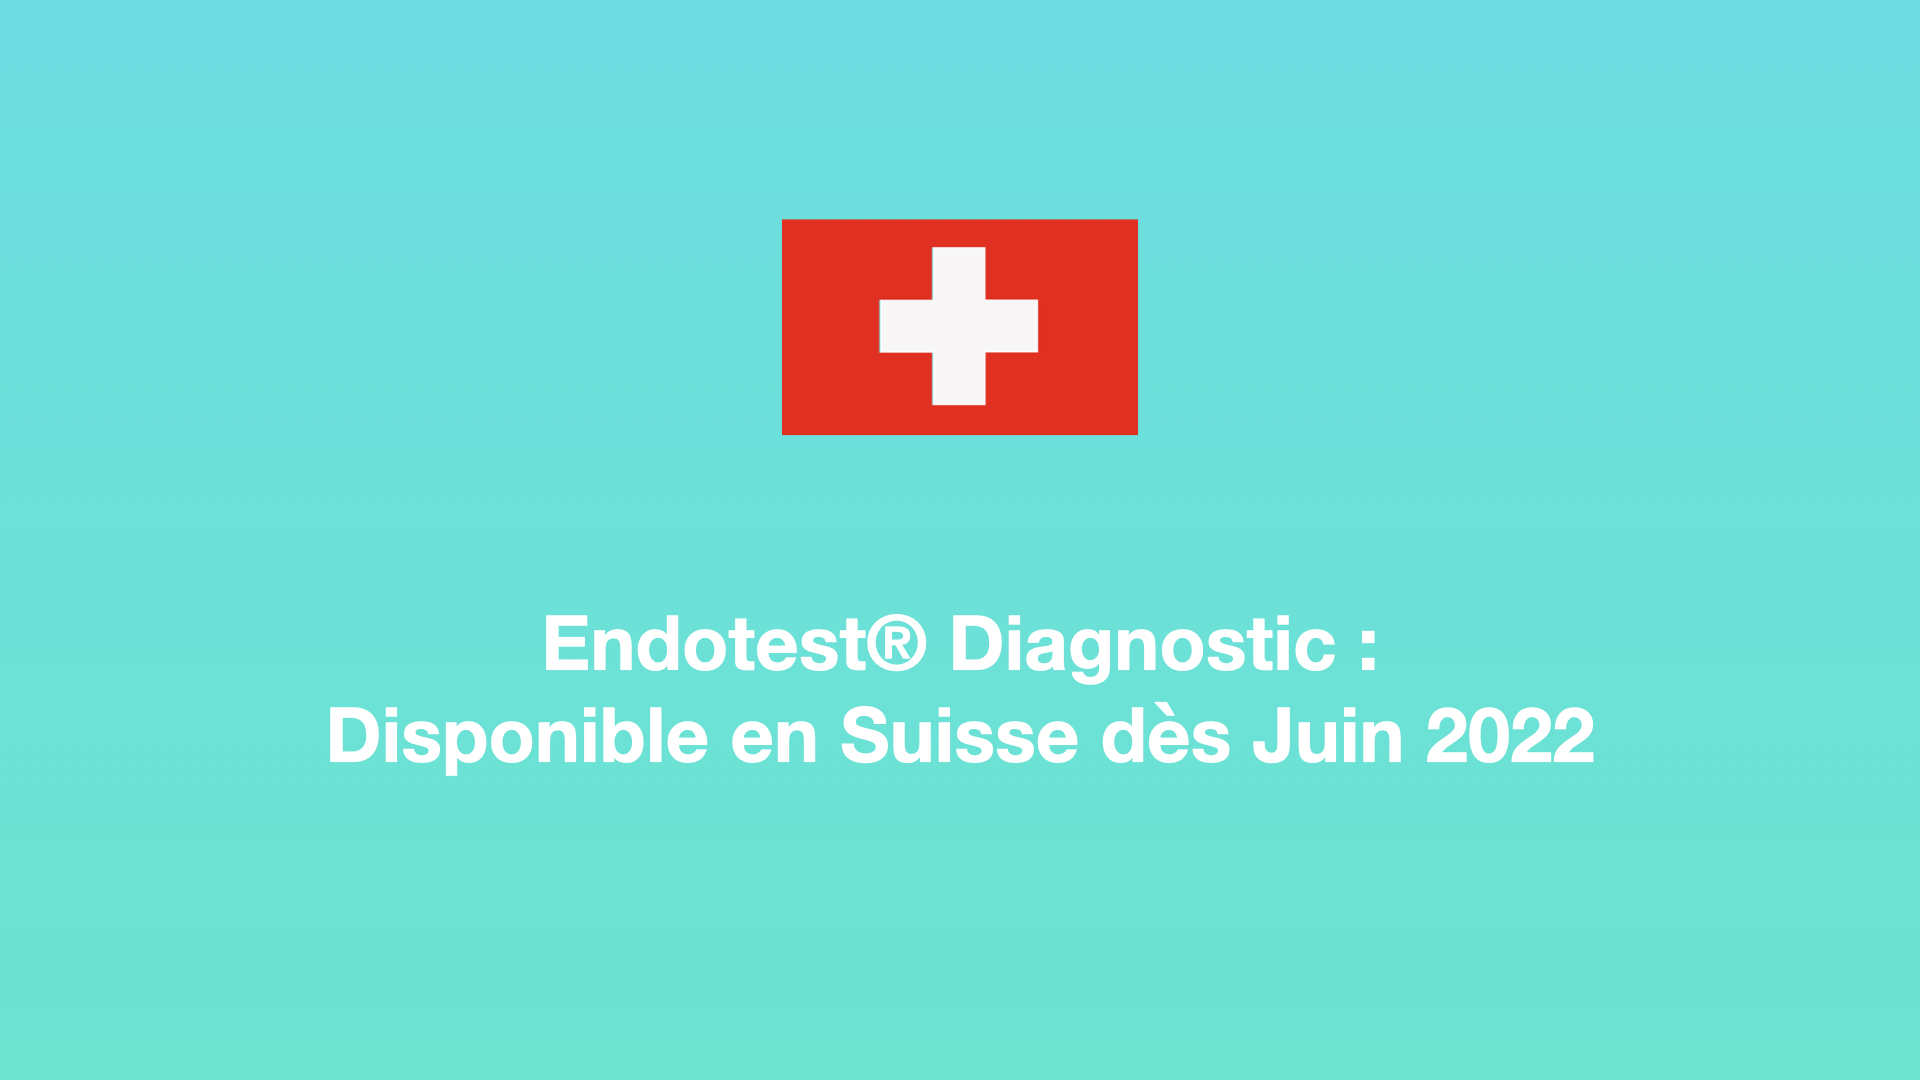 Endotest® Diagnostic : Disponible en Suisse à partir du 1er juin 2022